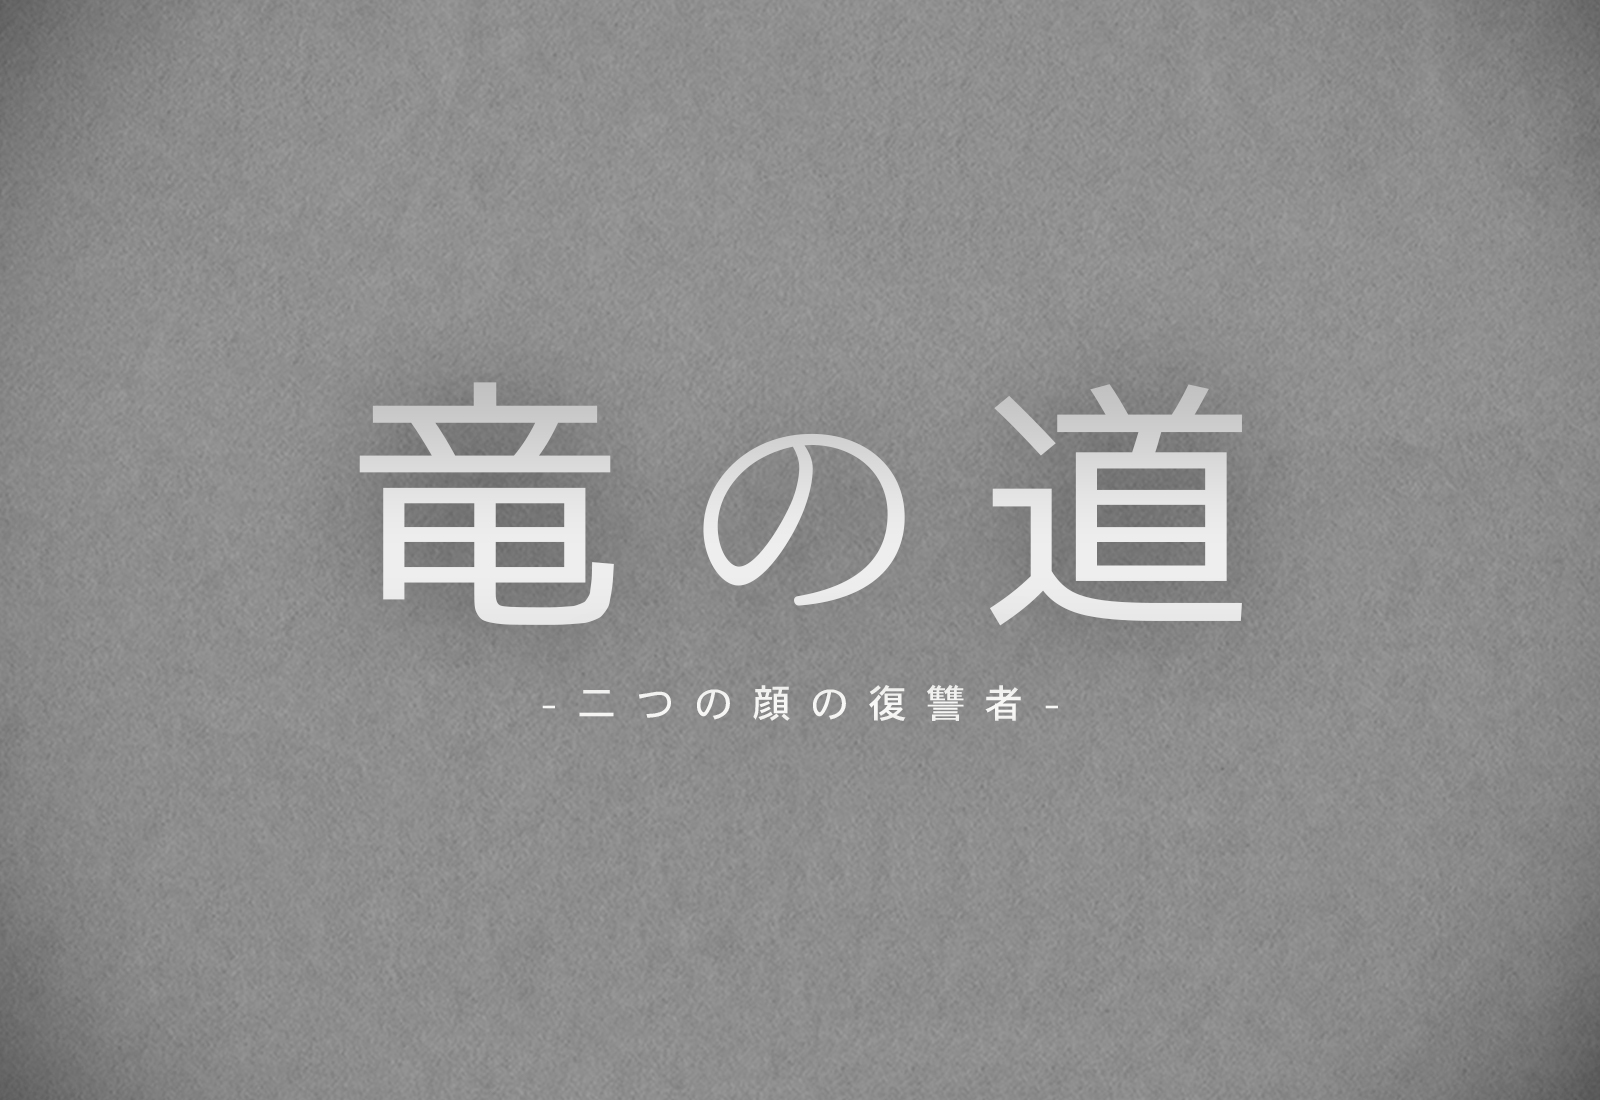 竜の道エンディング主題歌はsekai no owariのumbrella